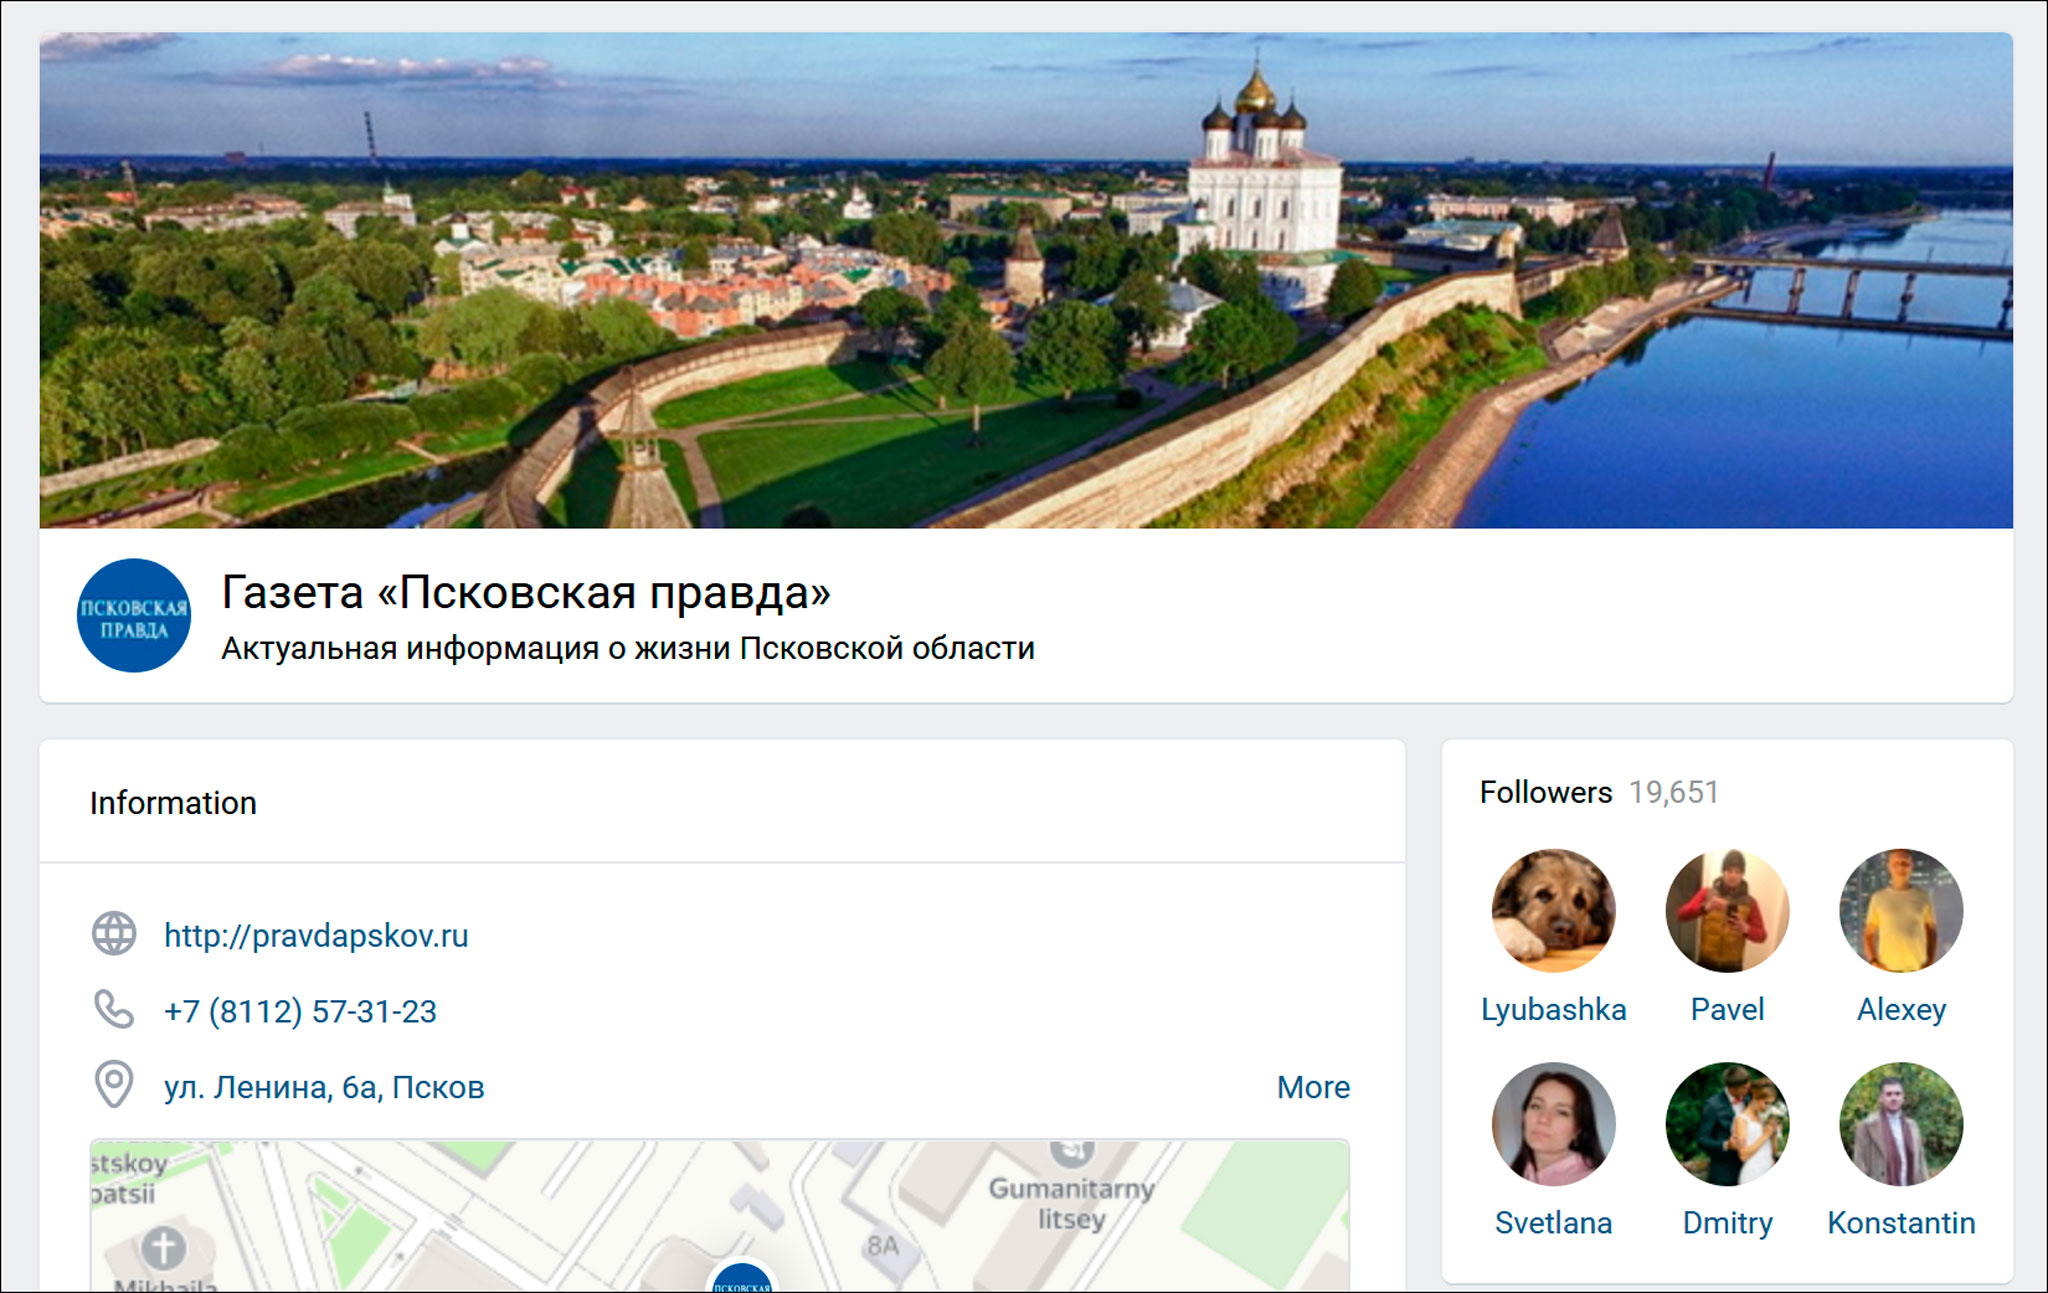 Группа «Псковской правды» во «ВКонтакте» — крупнейшая среди изданий медиахолдинга «Издательский дом «Медиа 60»: в ней почти 20 тысяч подписчиков